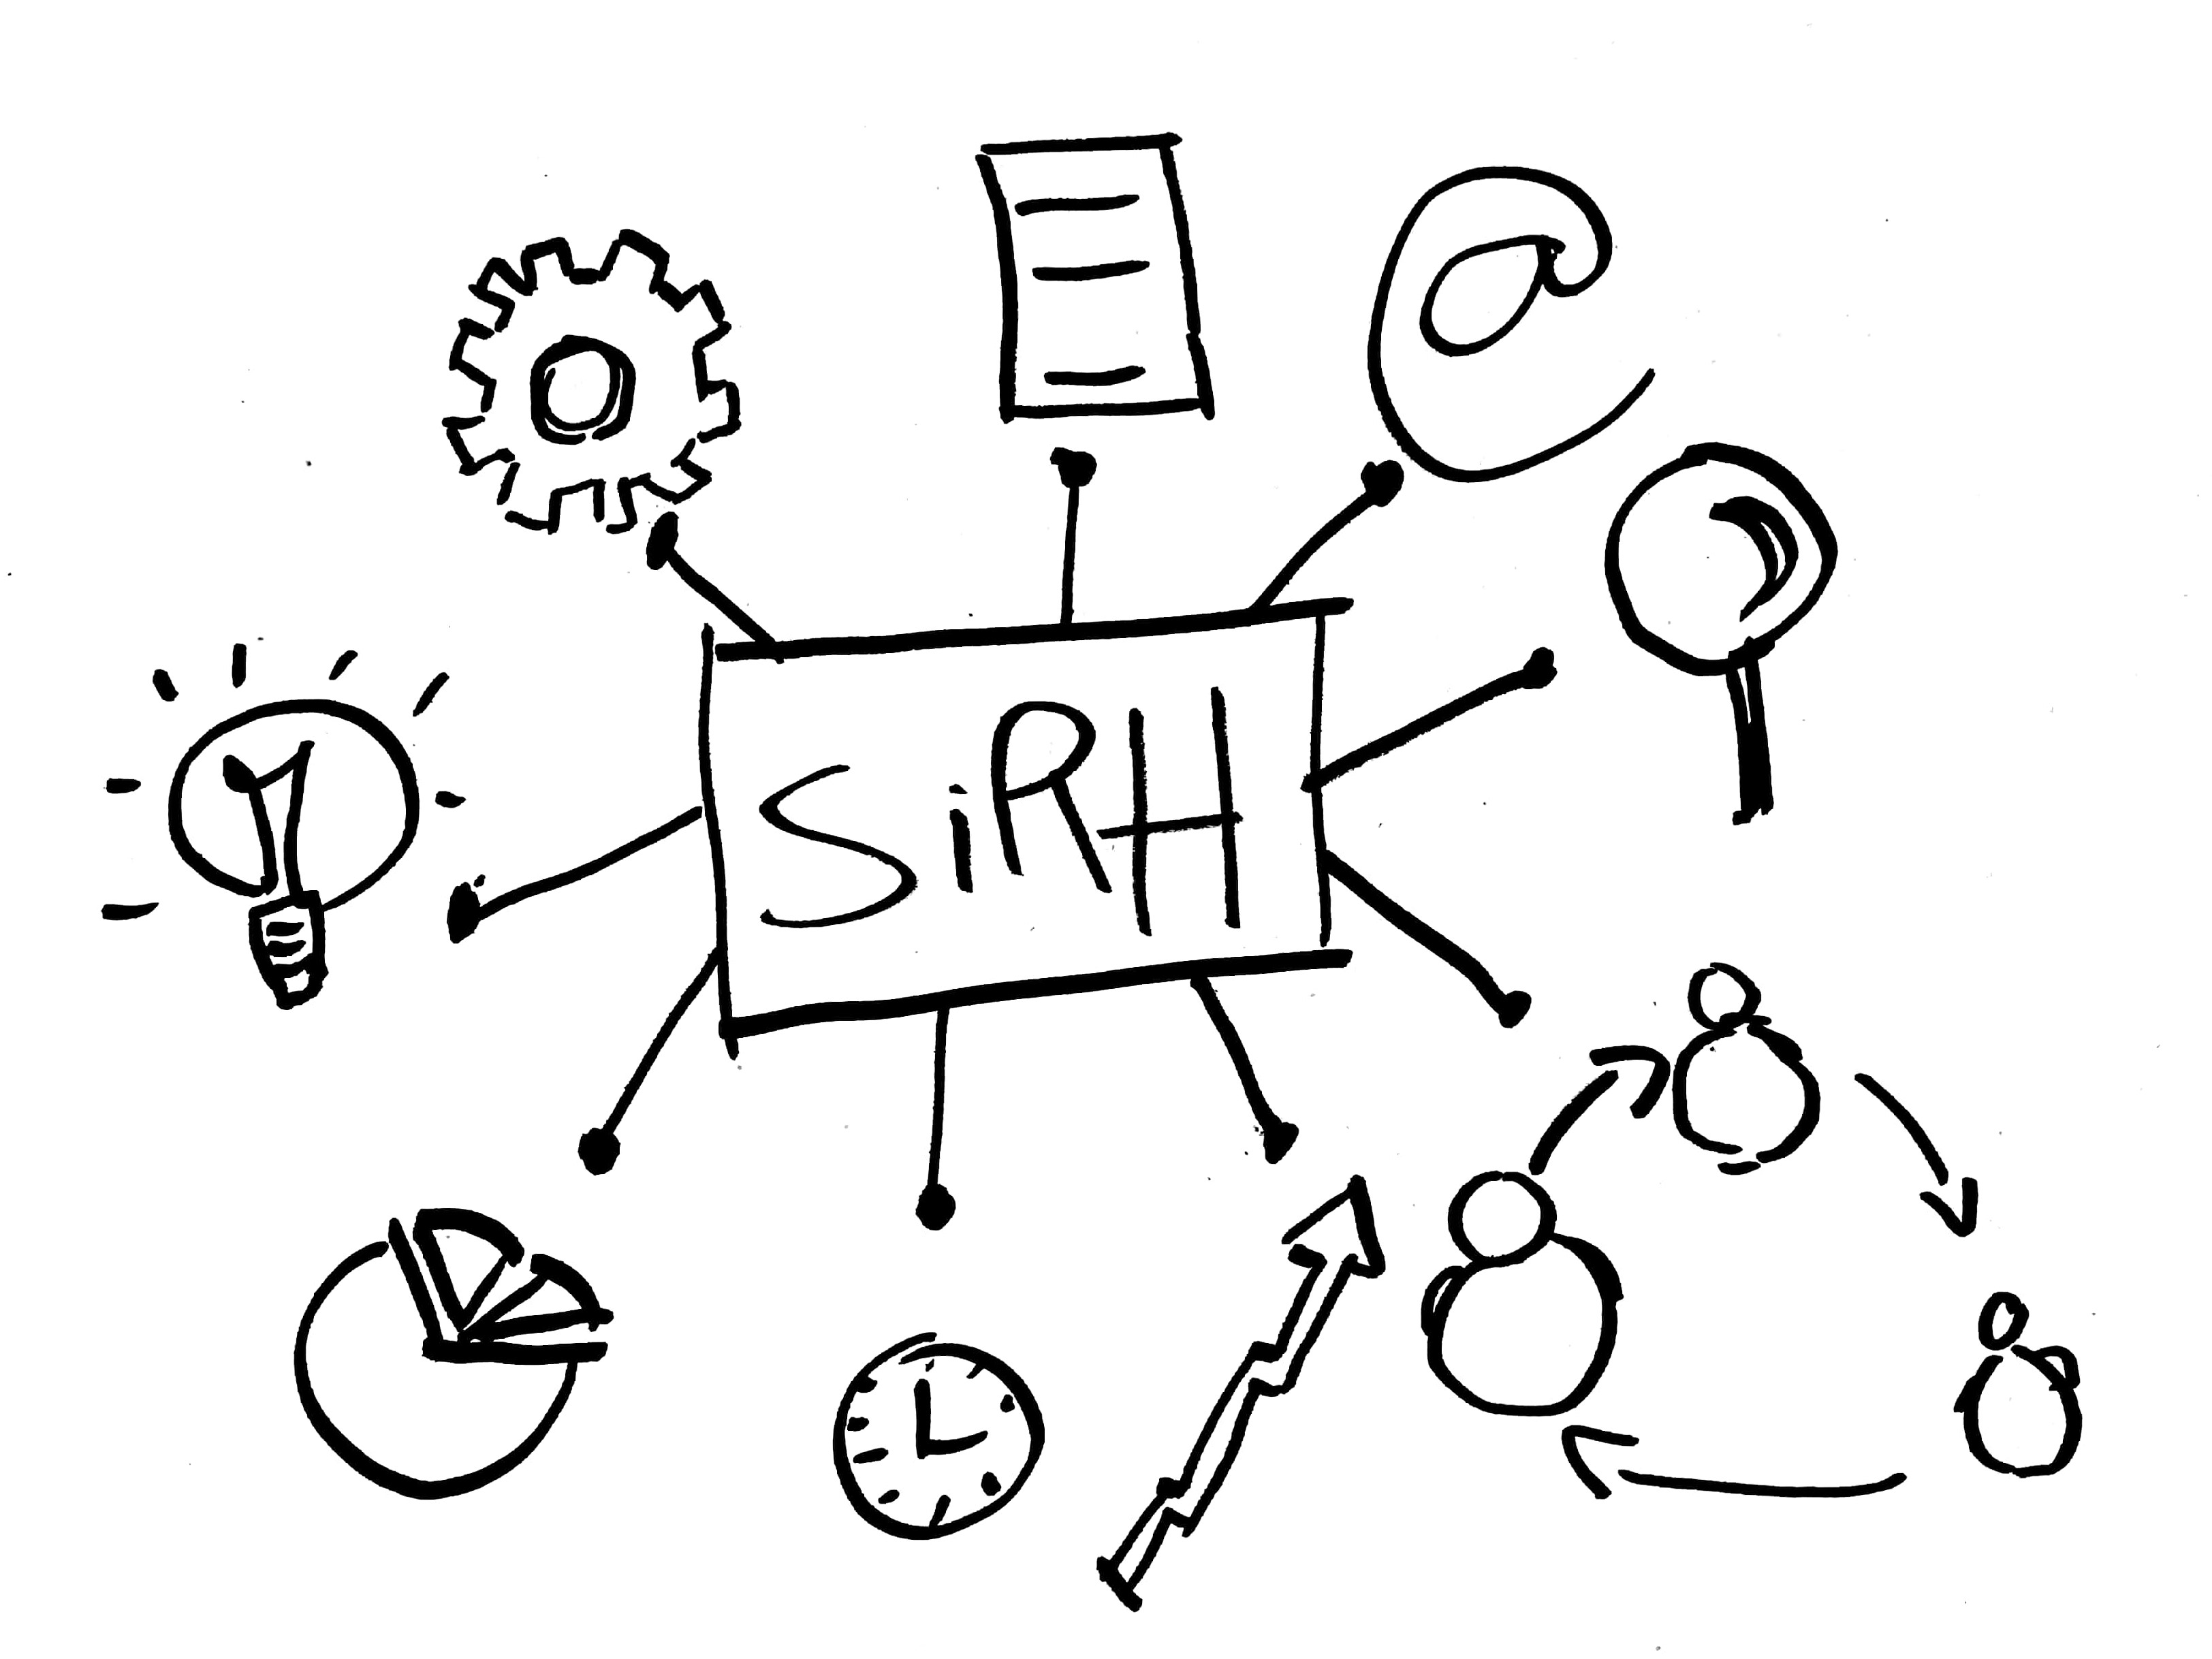 Tout savoir sur le SIRH : définition, fonctionnement, critères de choix et avantages